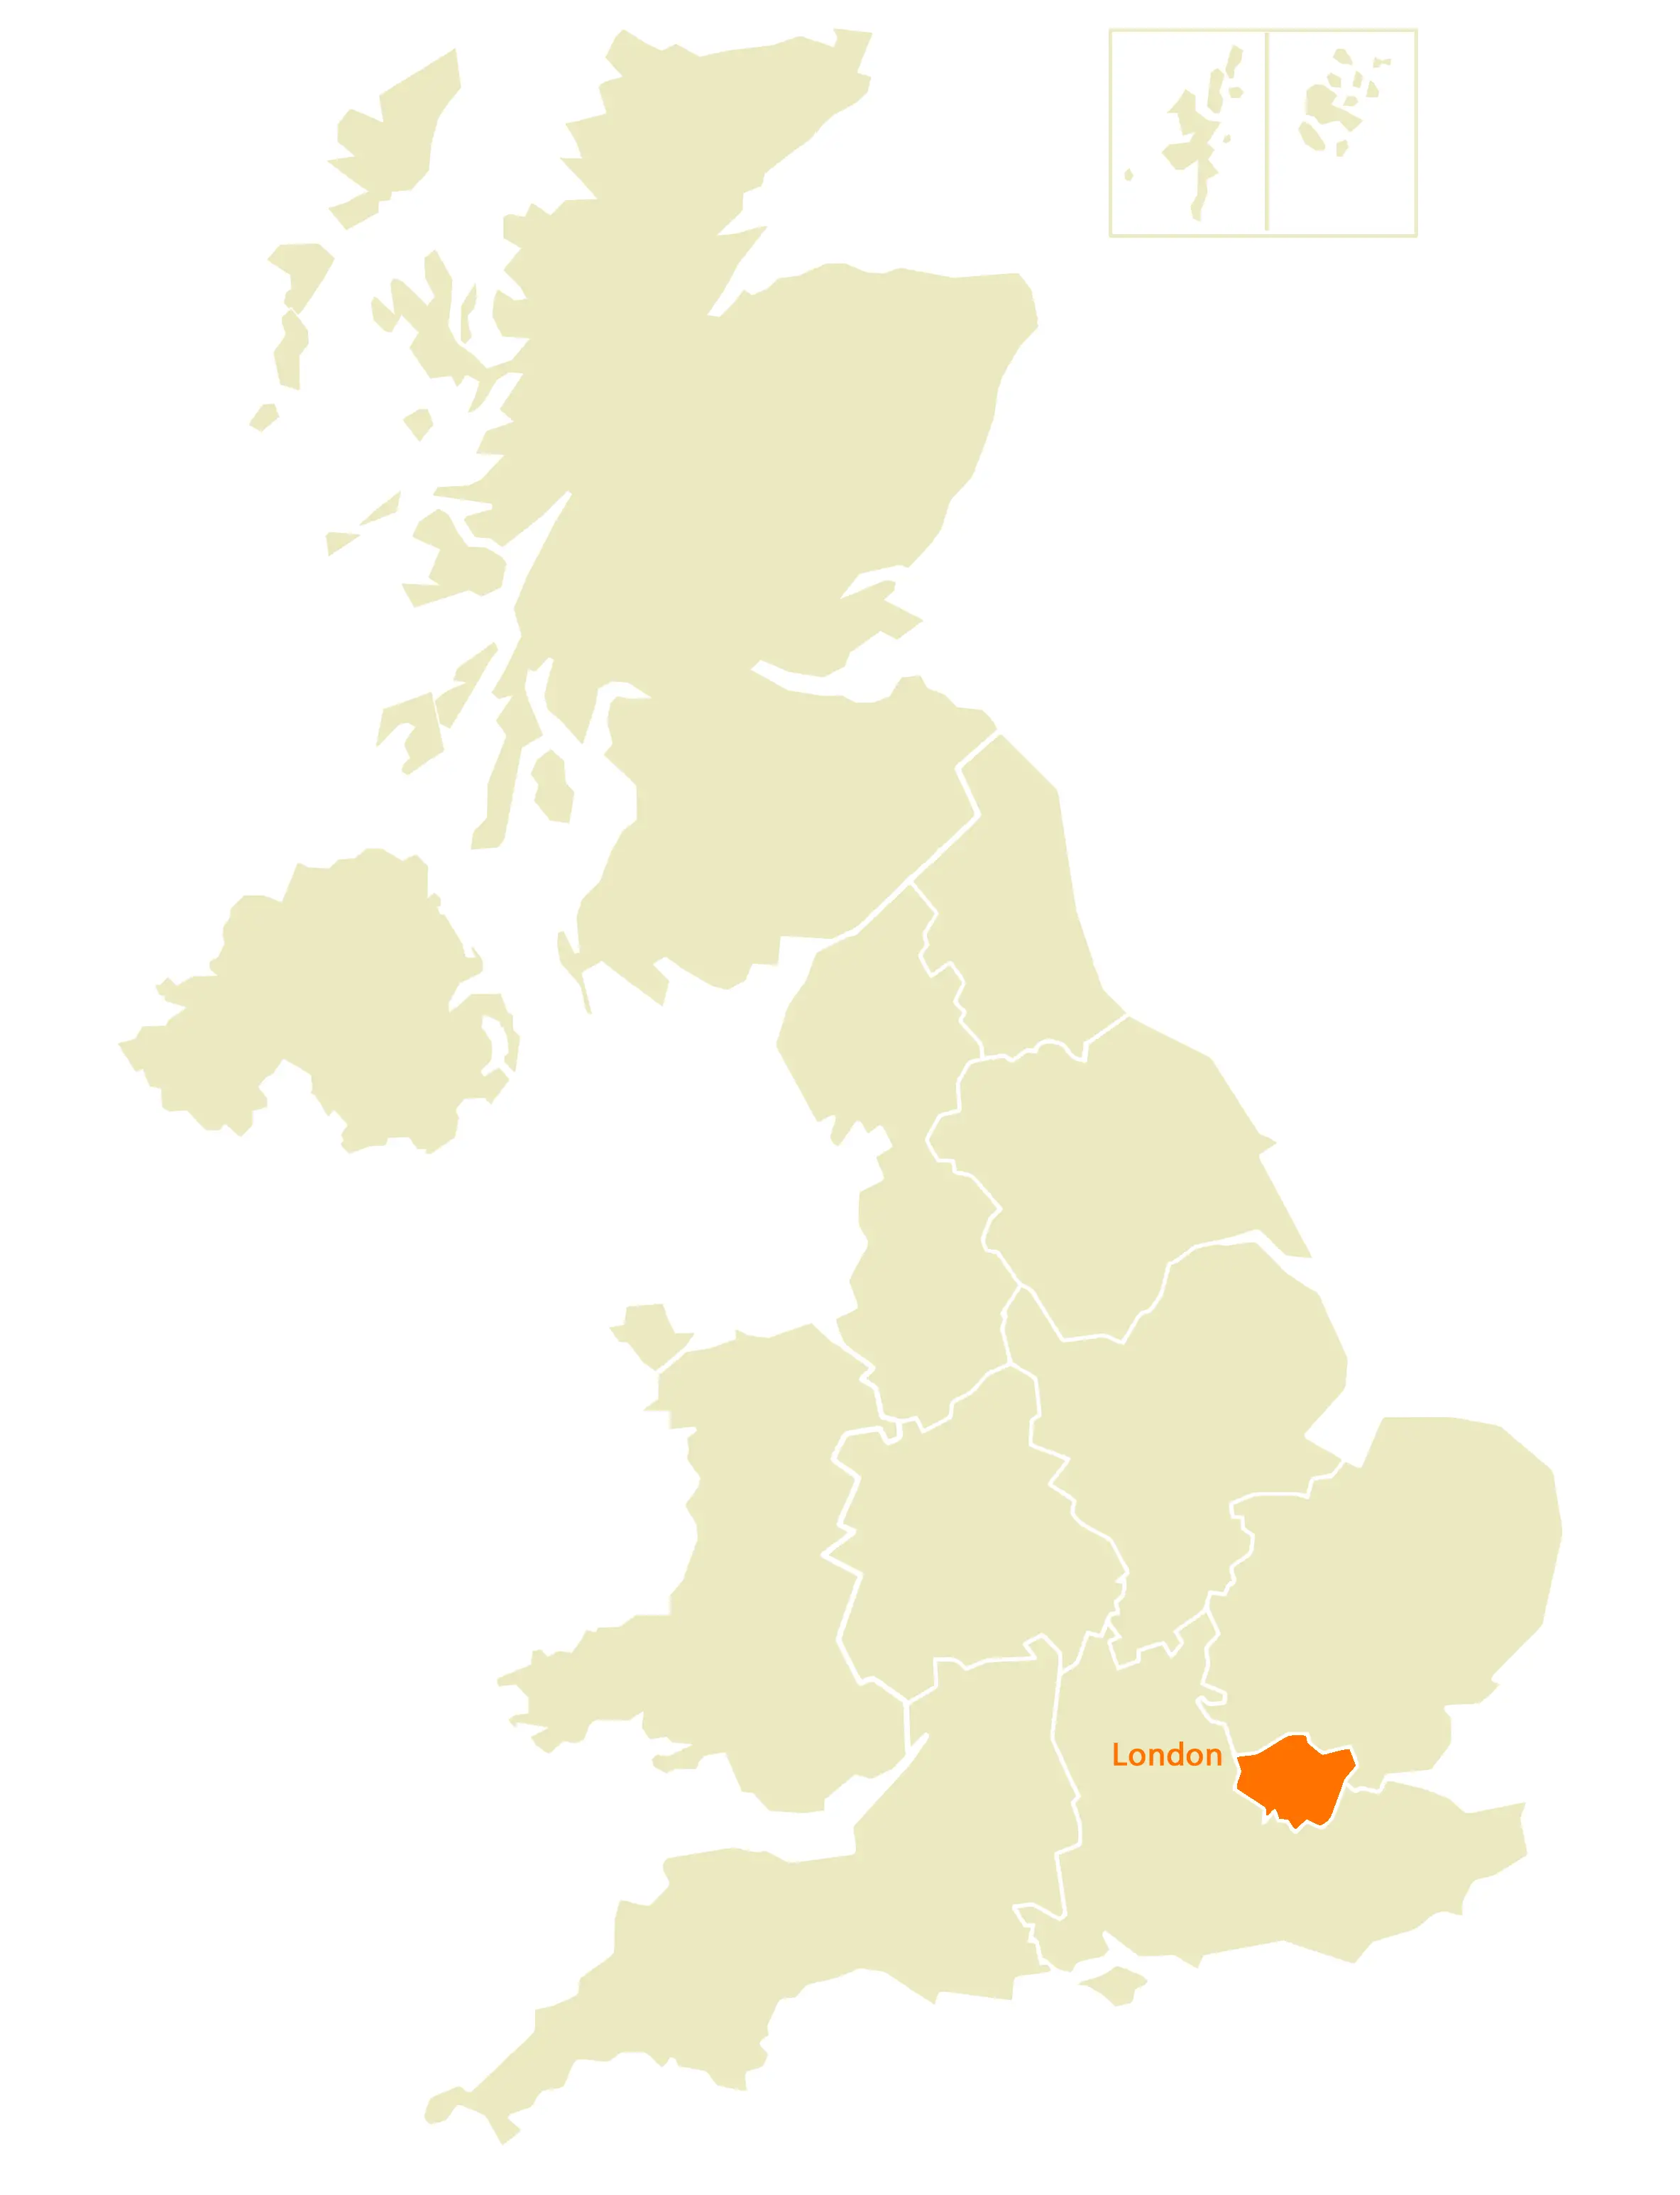 Location Map of London - Mapsof.Net